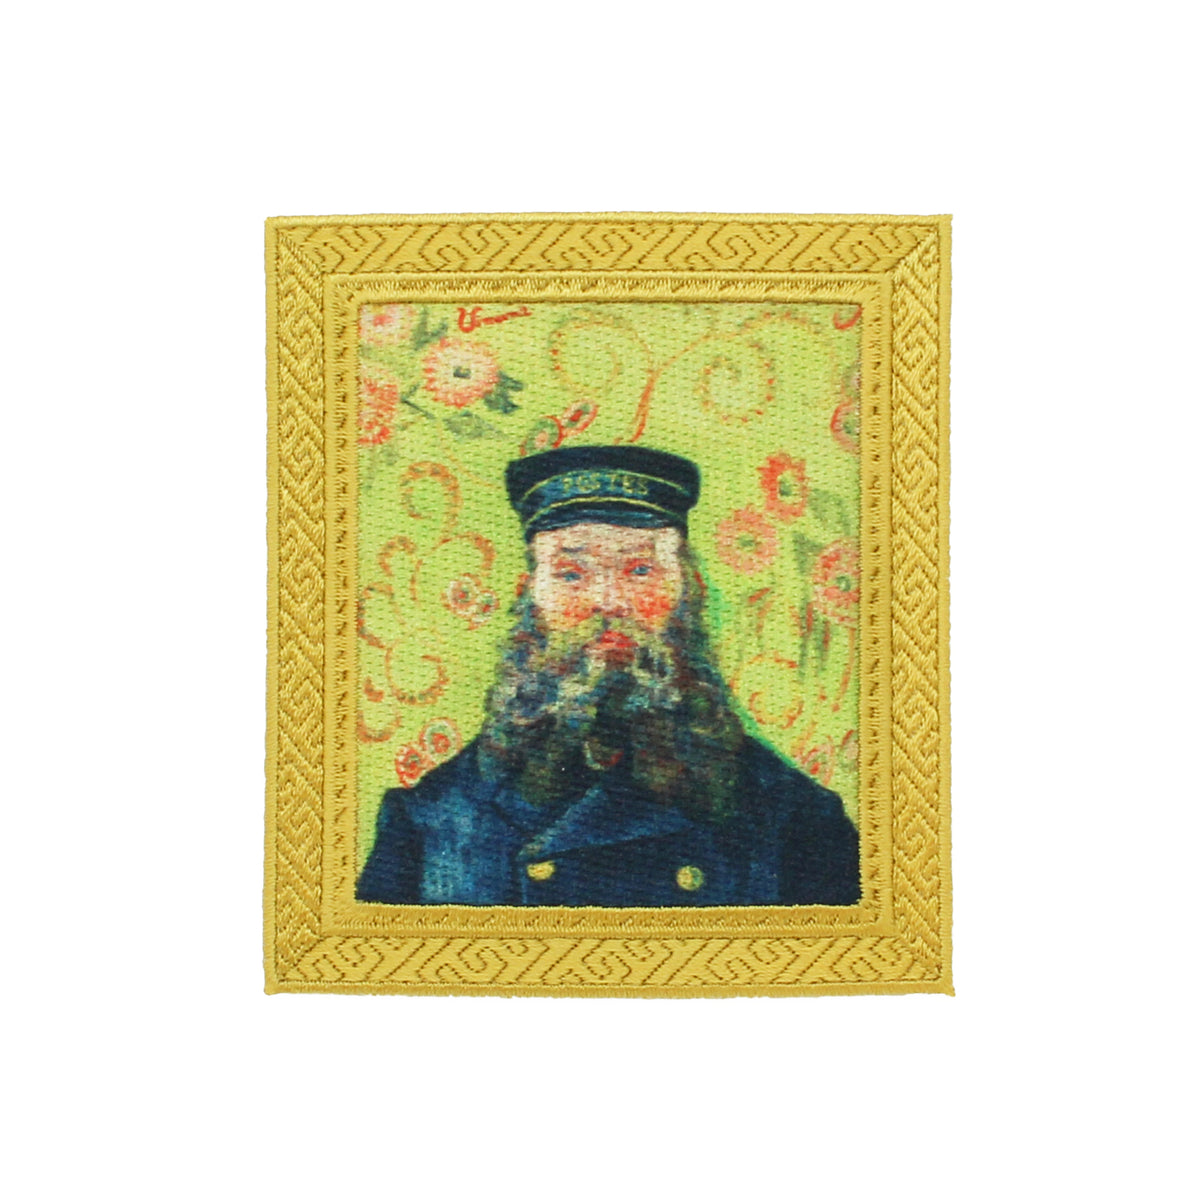 Van Gogh &quot;Postman&quot; artwork patch